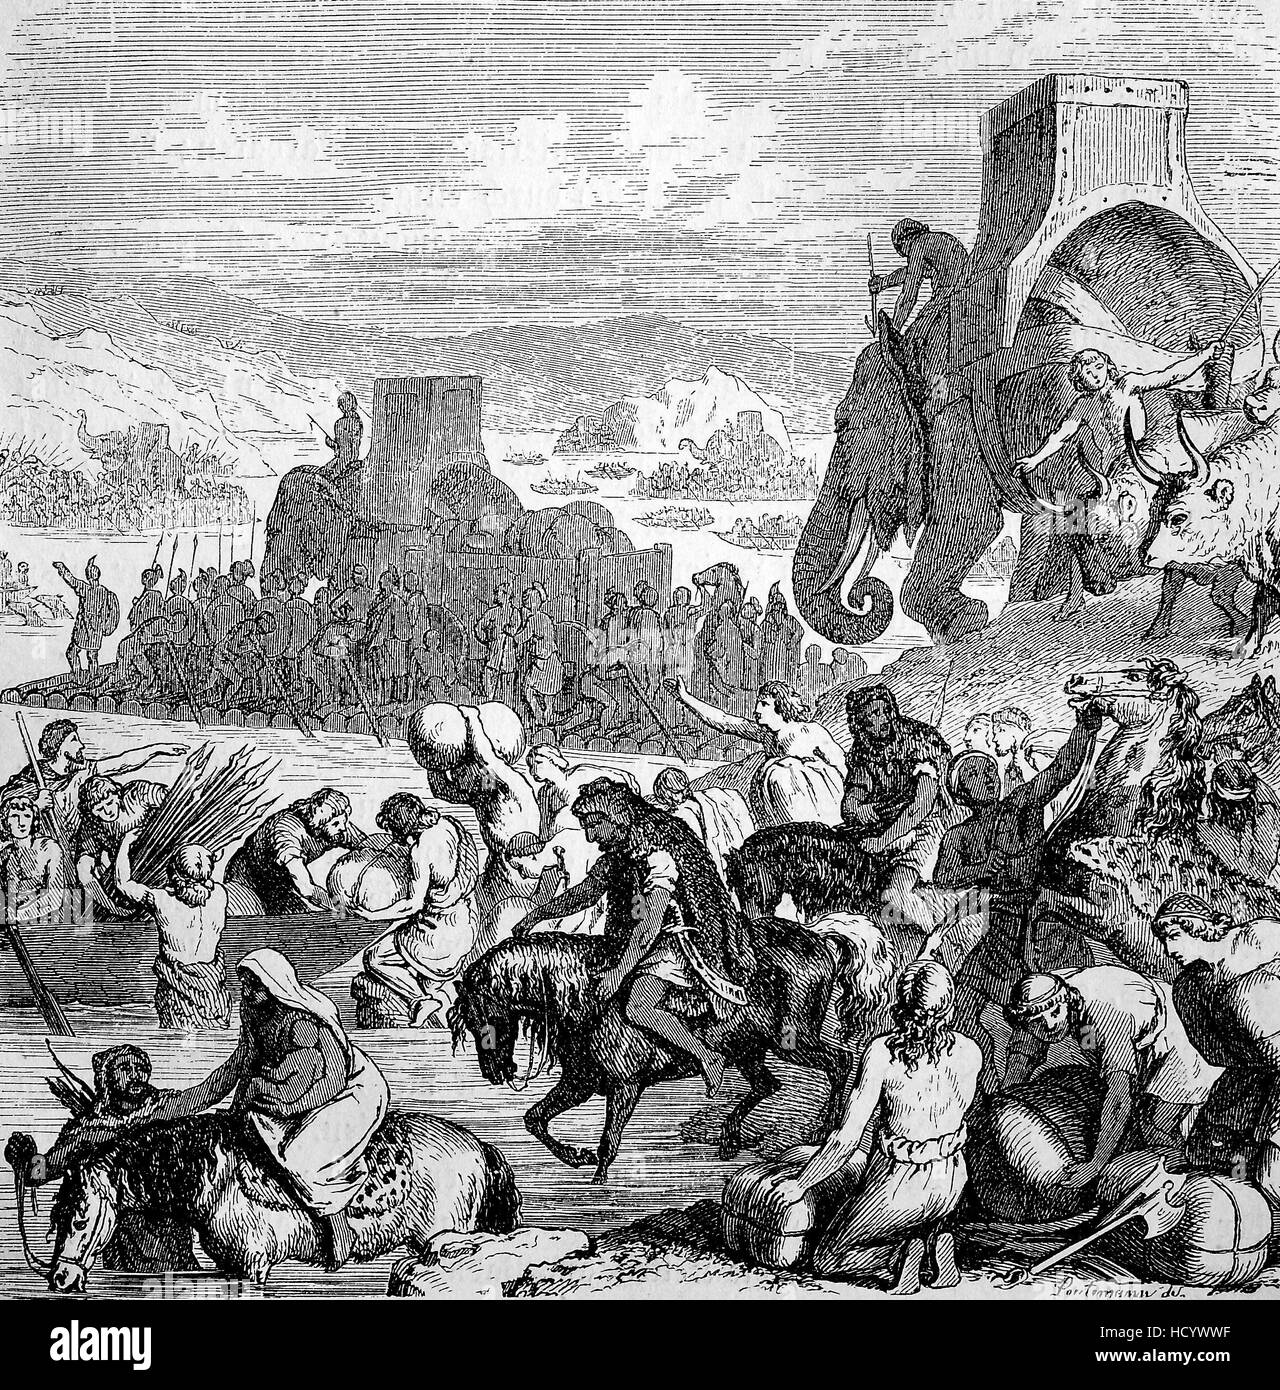 Annibale traversata del fiume Rodano nel 218 A.C. fu uno dei principali avvenimenti della seconda guerra punica, la storia di Roma antica, l'impero romano, Italia Foto Stock